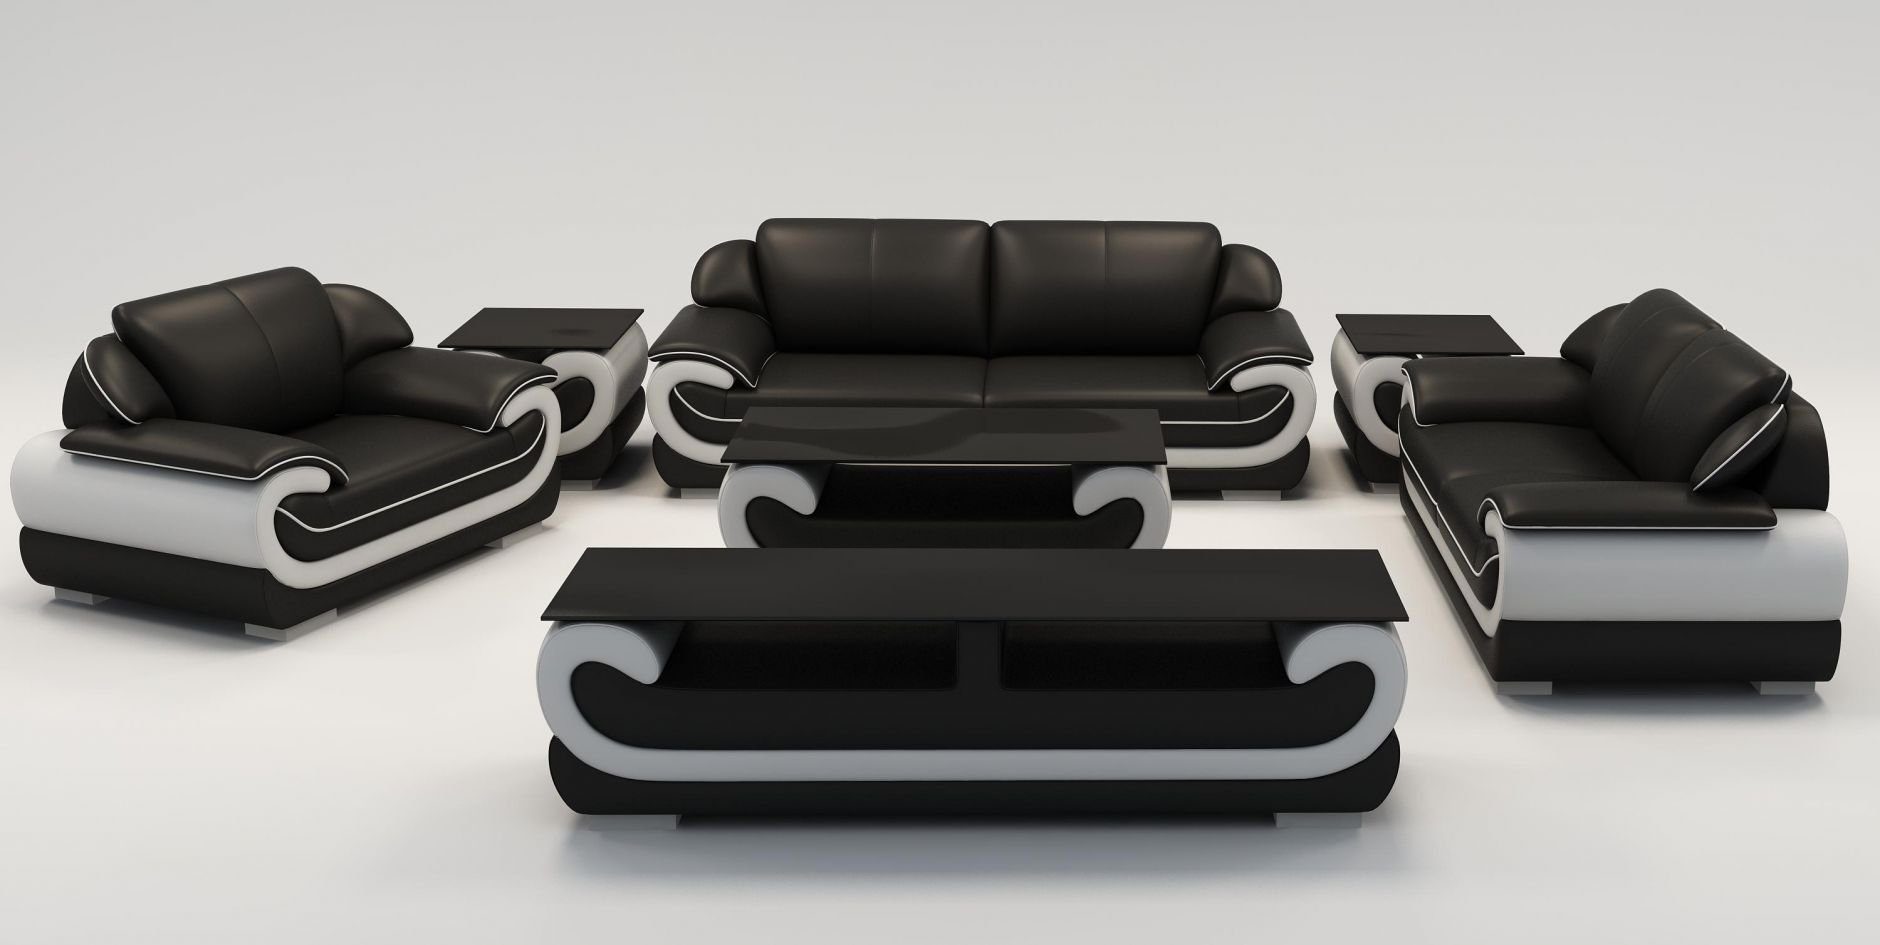 JVmoebel Sofa Sofagarnitur 3+2+1 Sitzer + Hocker Set Polstersofa Couch Designersofa, Made in Europe Schwarz/Weiß